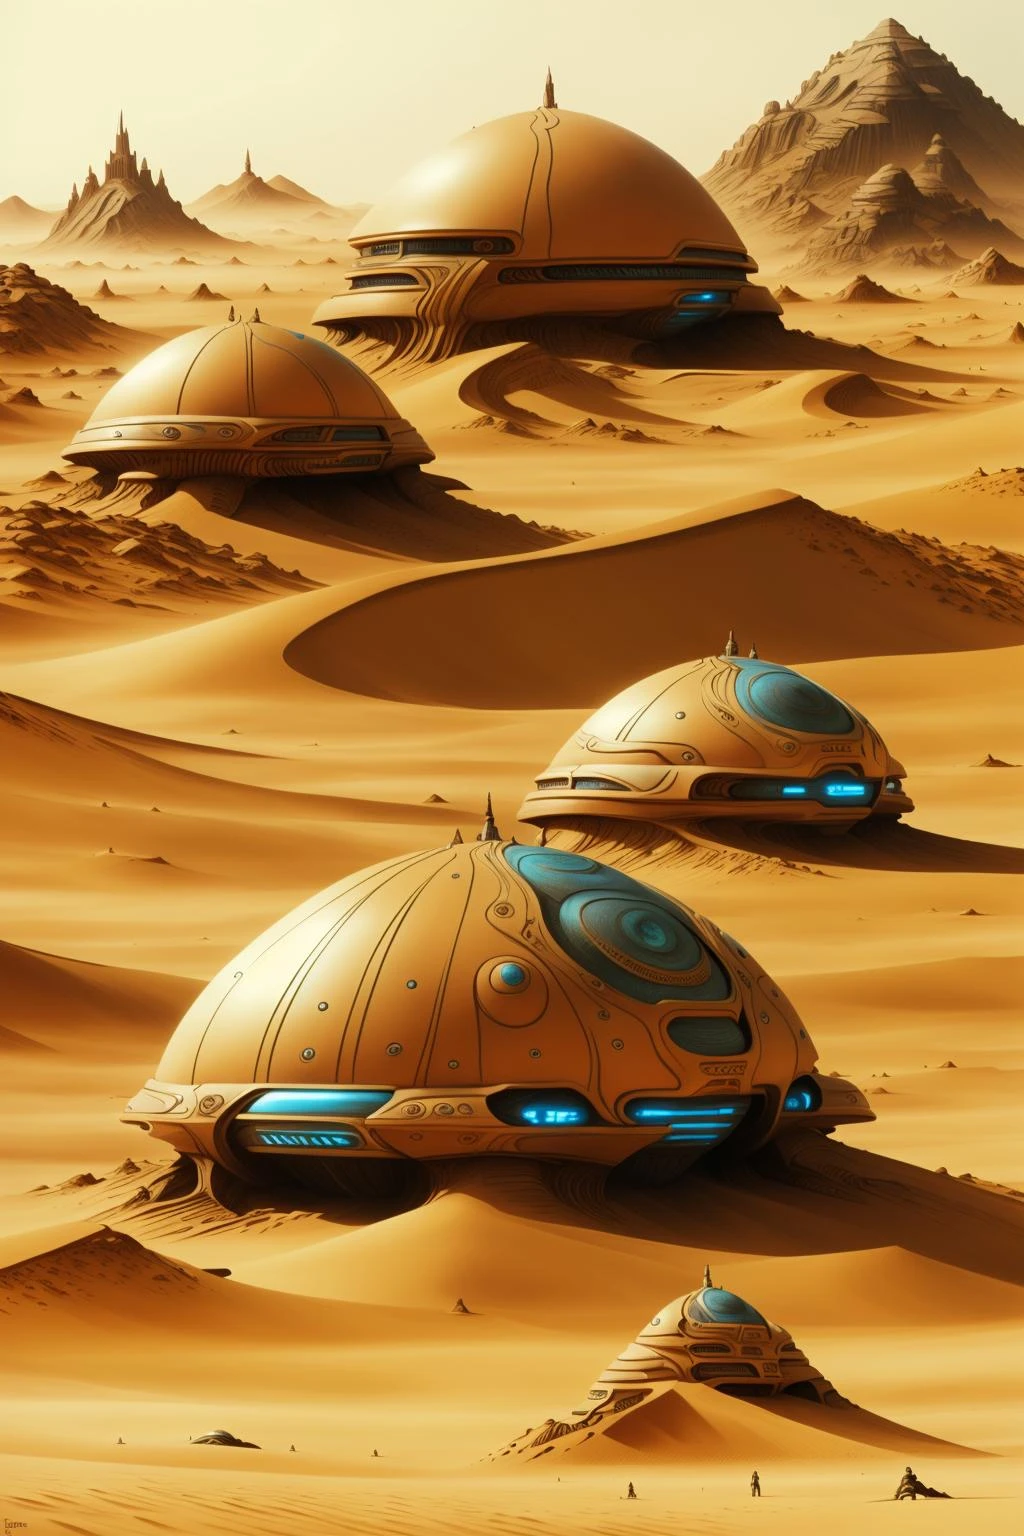 영화 듄의 등장인물, a futuristic city in the 사막 with a giant dome , 옥외, 여러 소년, 경치, 산, 모래, 우주선, 사막 , 공상 과학, 들판 한가운데에 앉아 있는 두 개의 바위